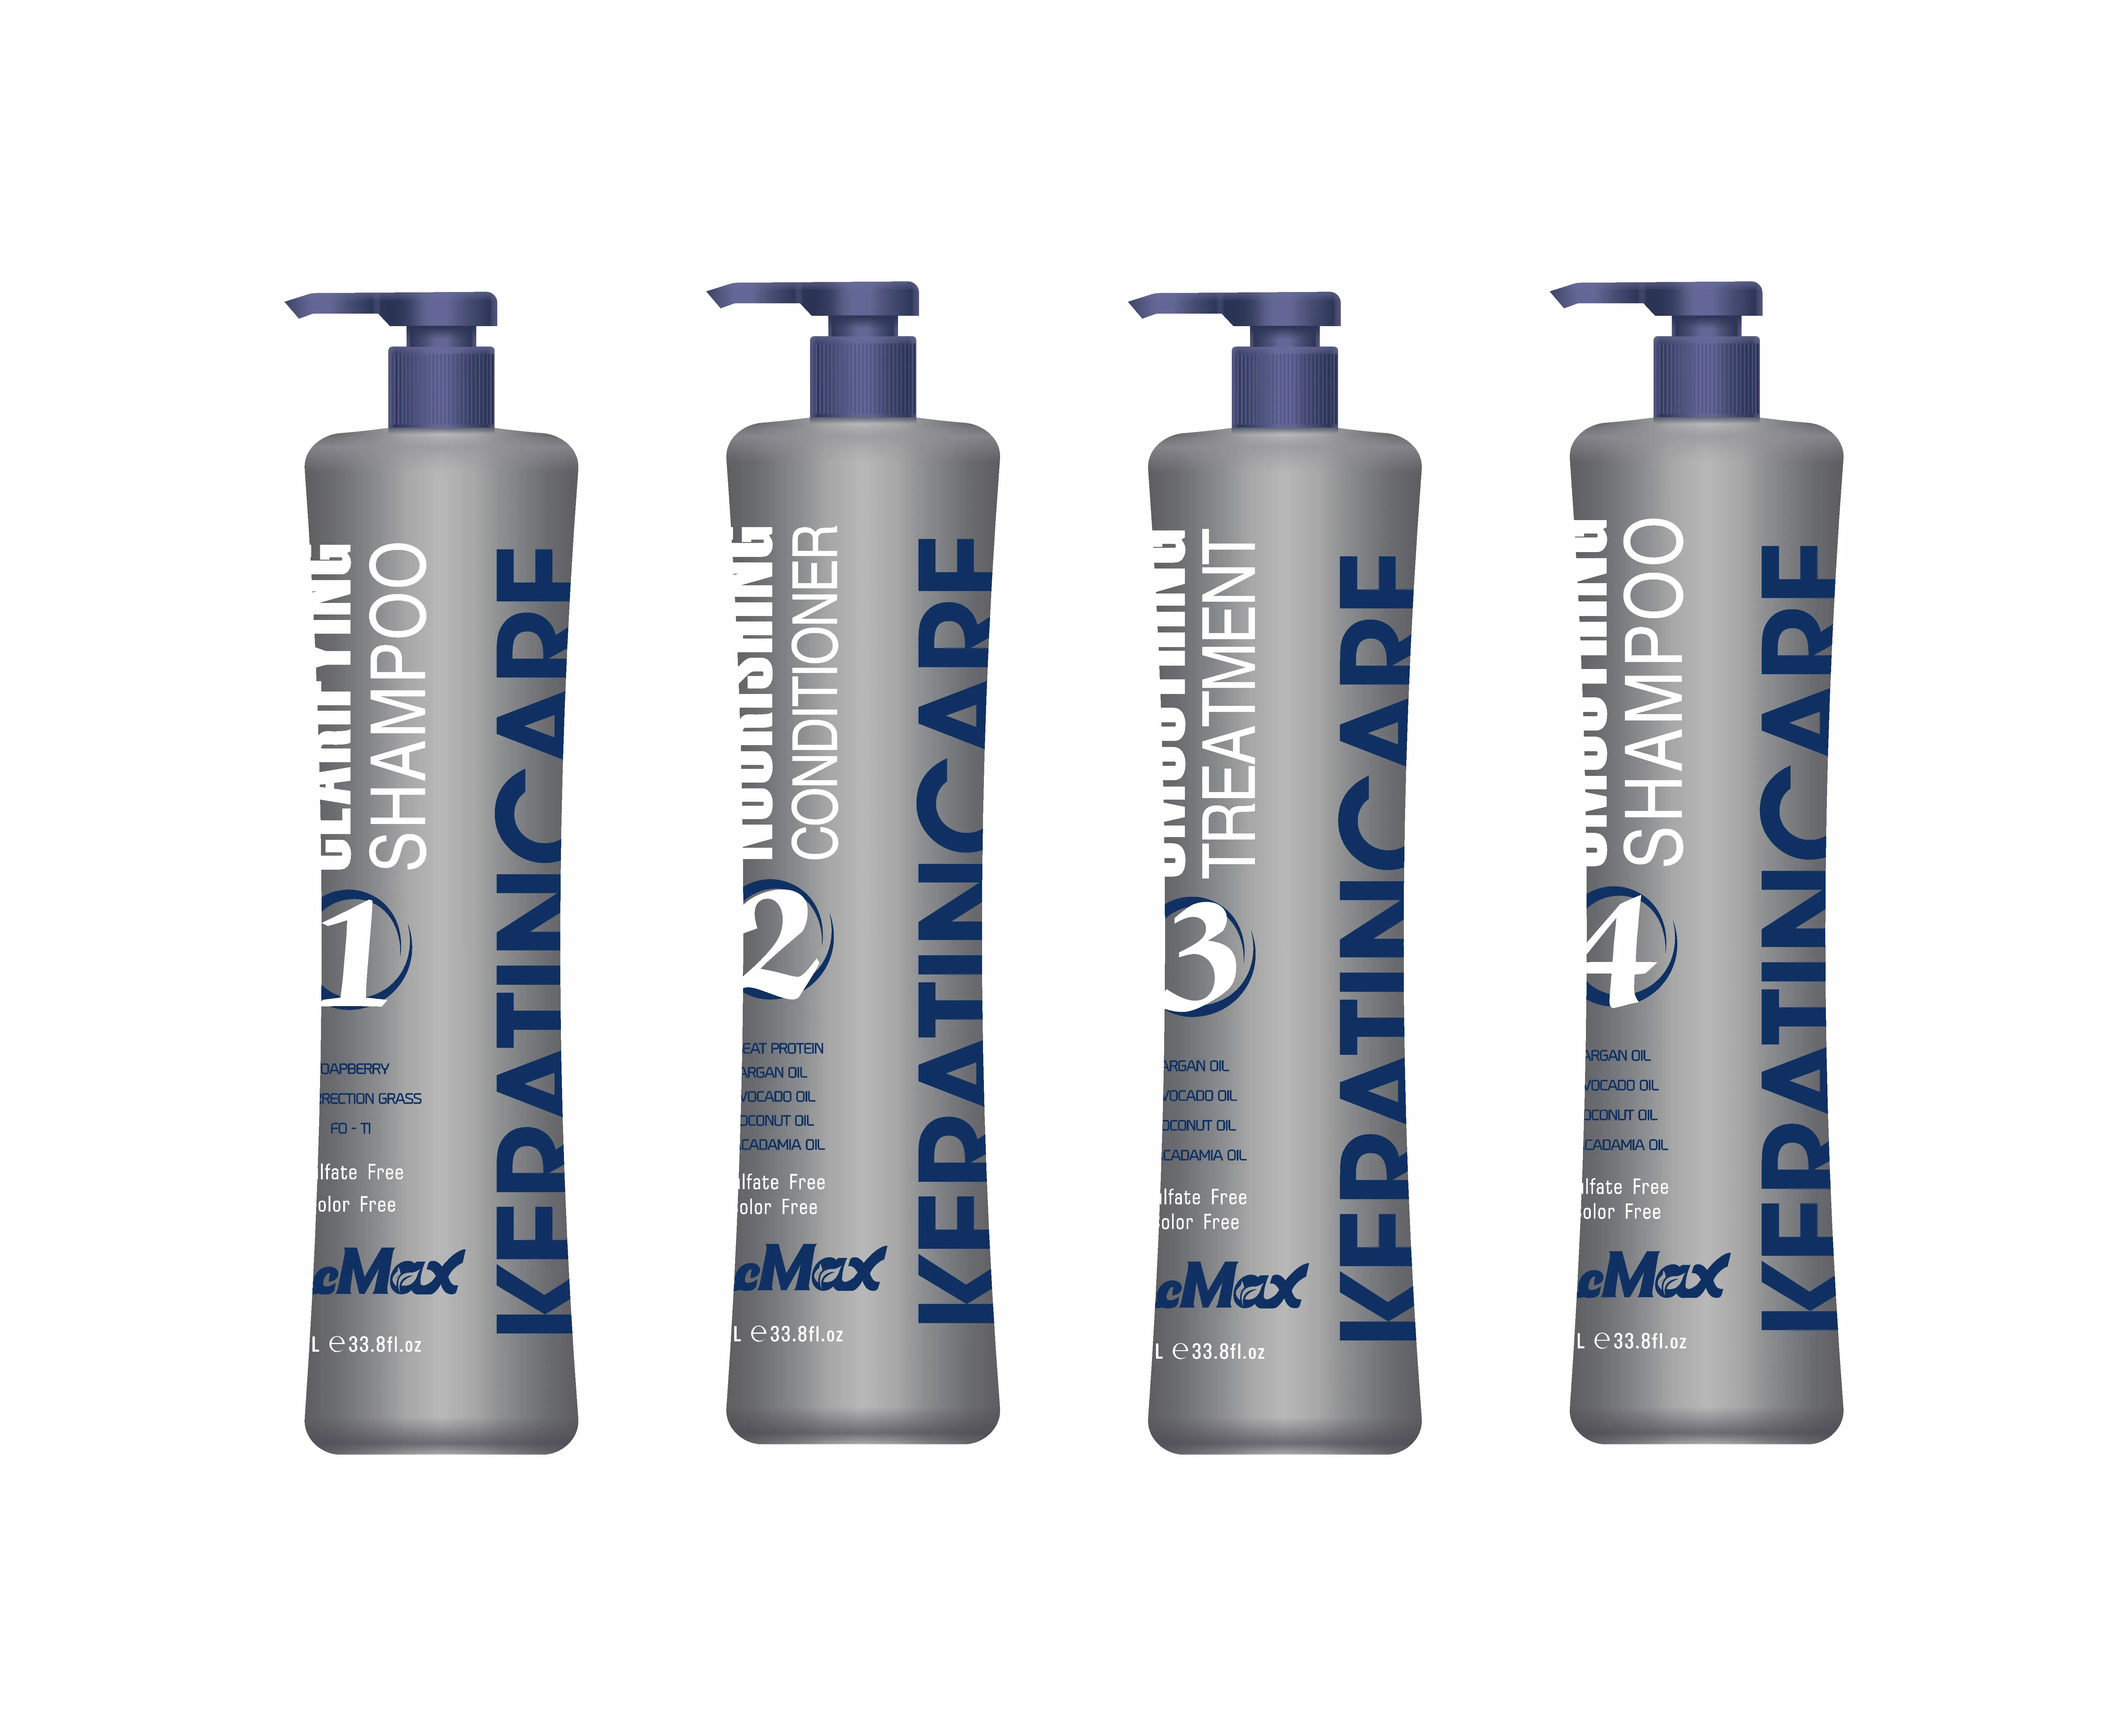 Cheratina materia prima cheratina proteina idrata trattamento per capelli shampoo trattamento alla cheratina shampoo protegge 1000ml